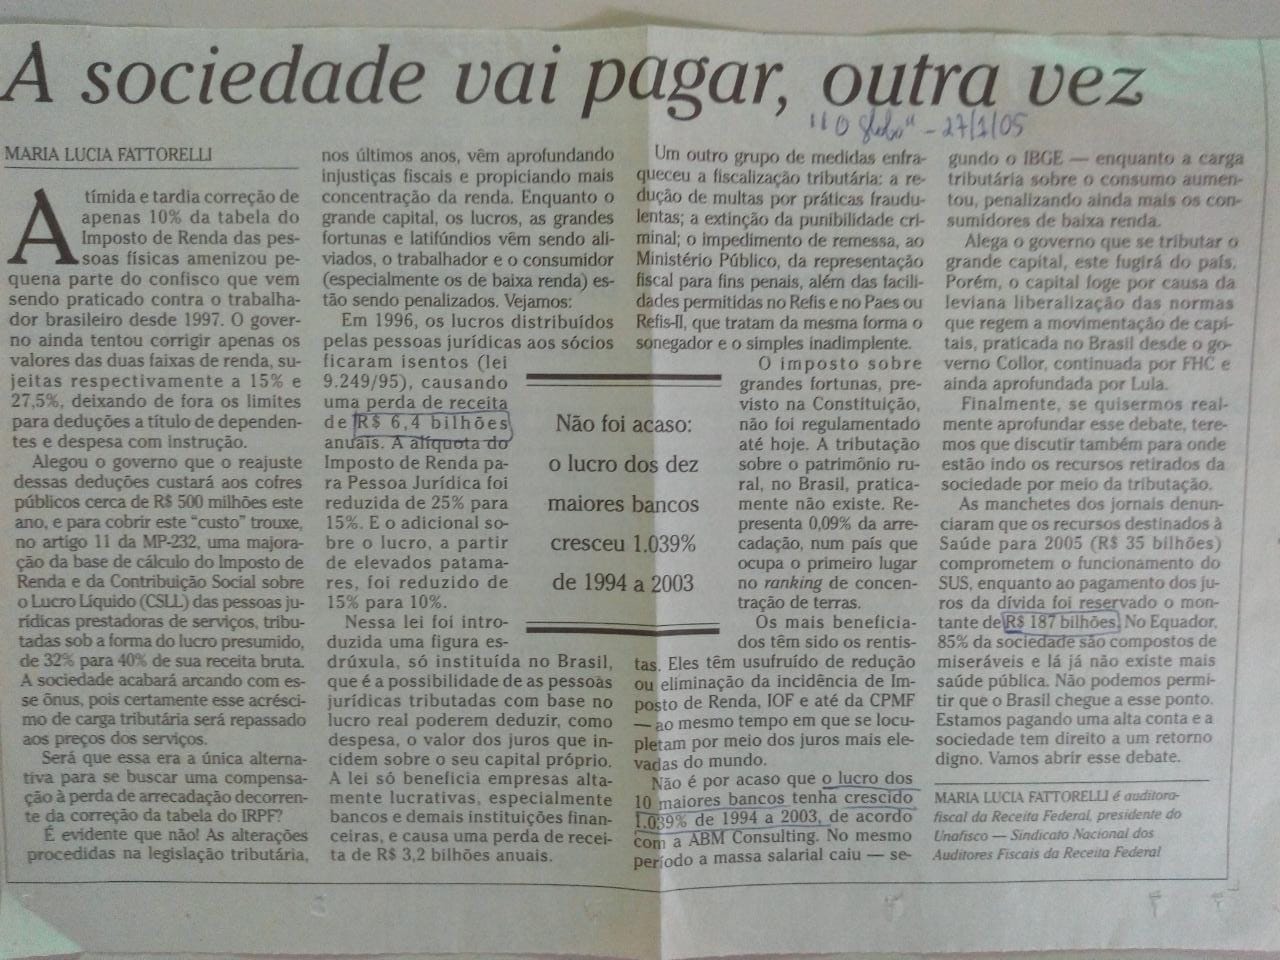 O Globo: “A sociedade vai pagar a conta, outra vez”, M.L Fattorelli